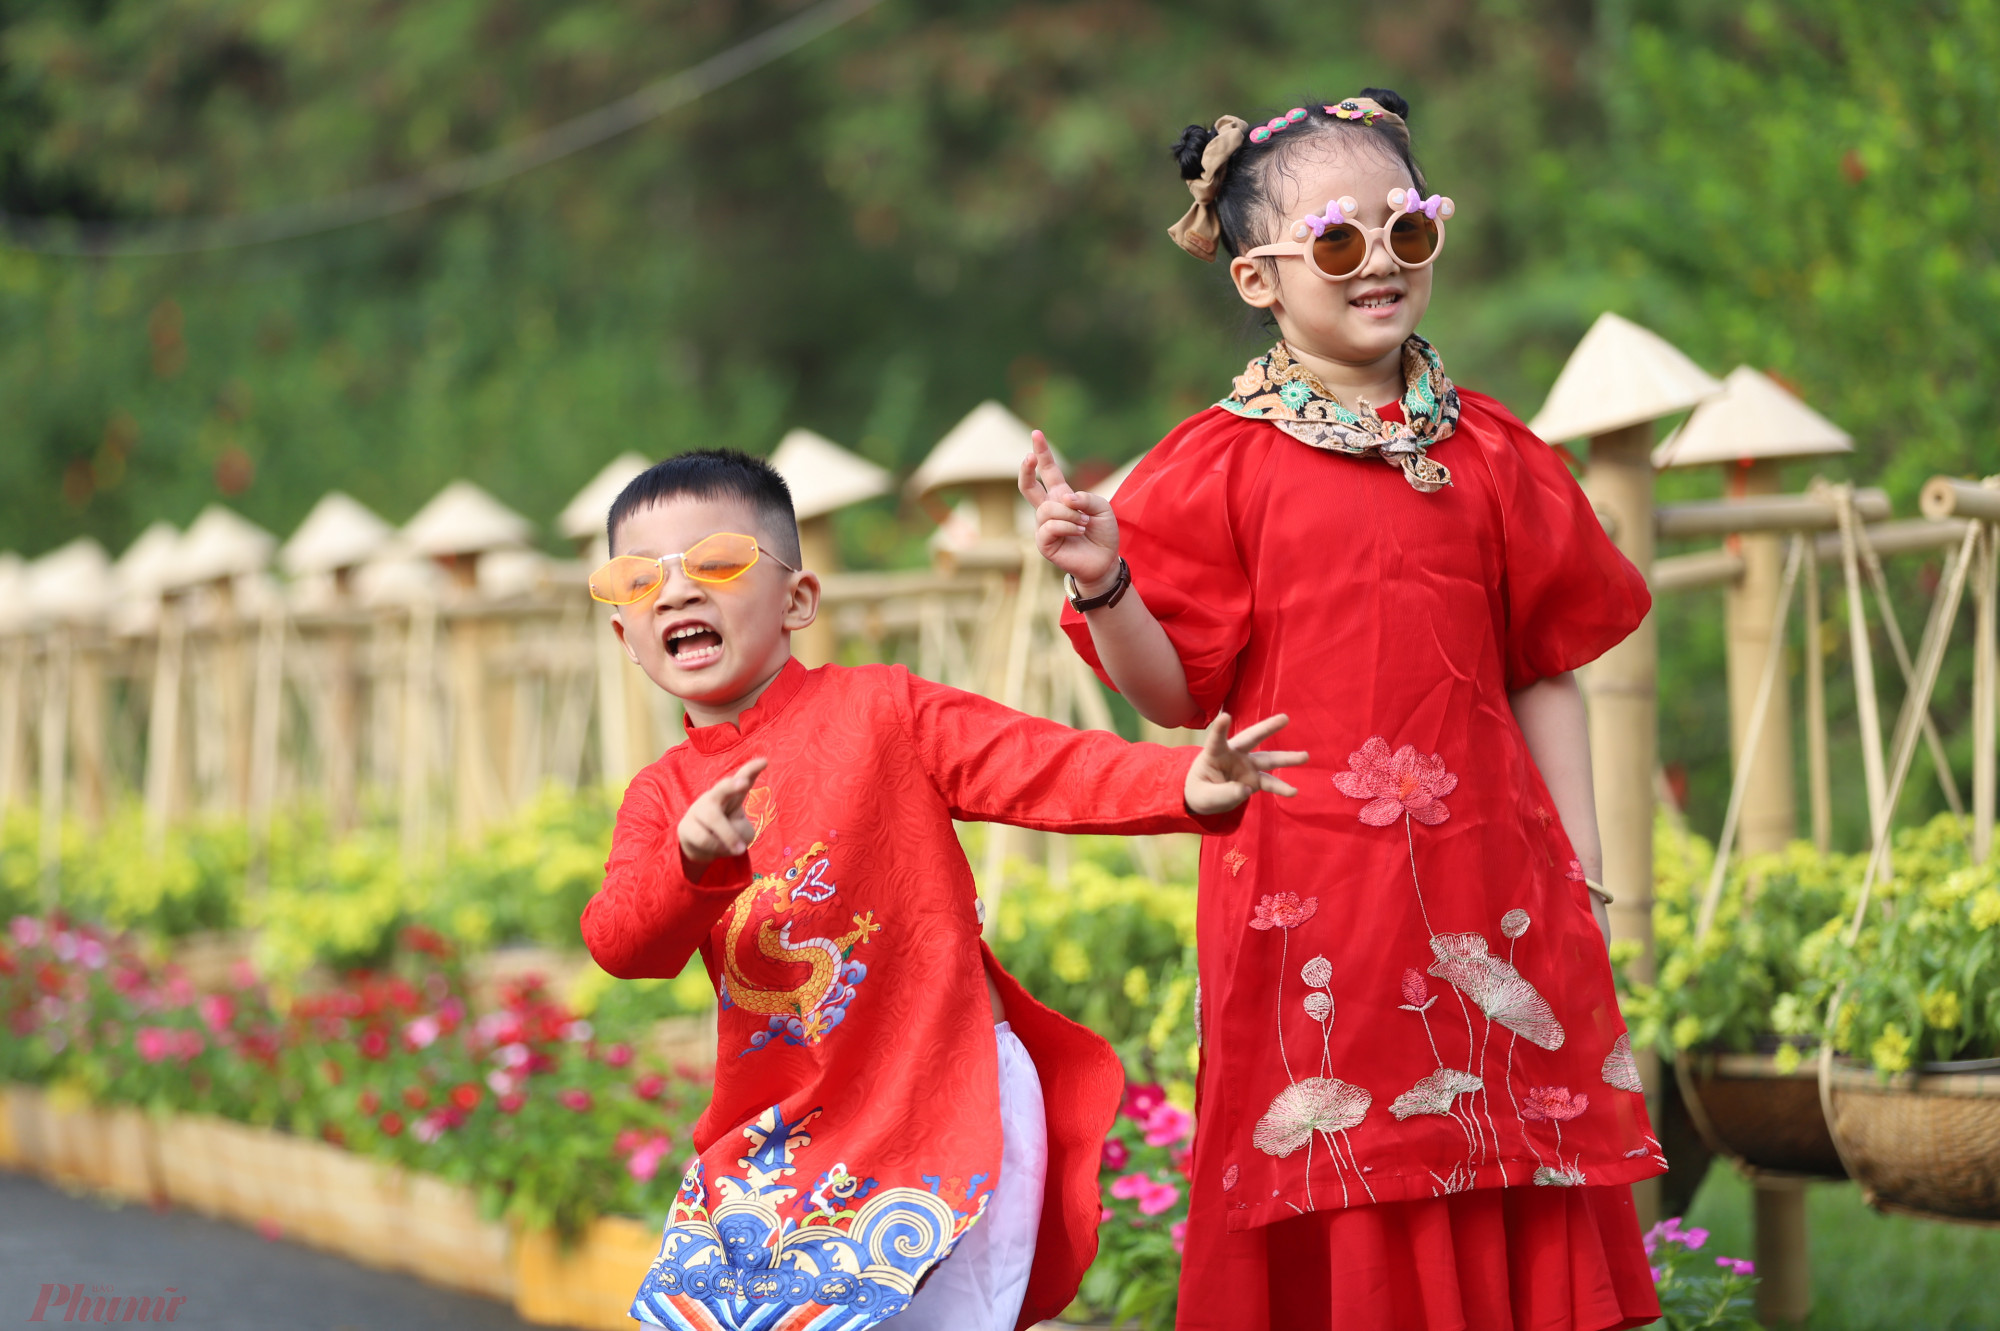 Năm nay, công viên Văn hóa Gò Vấp cũng là địa điểm thu hút nhiều người tìm đến vì được trang trí cây hoa, tiểu cảnh khá đẹp.